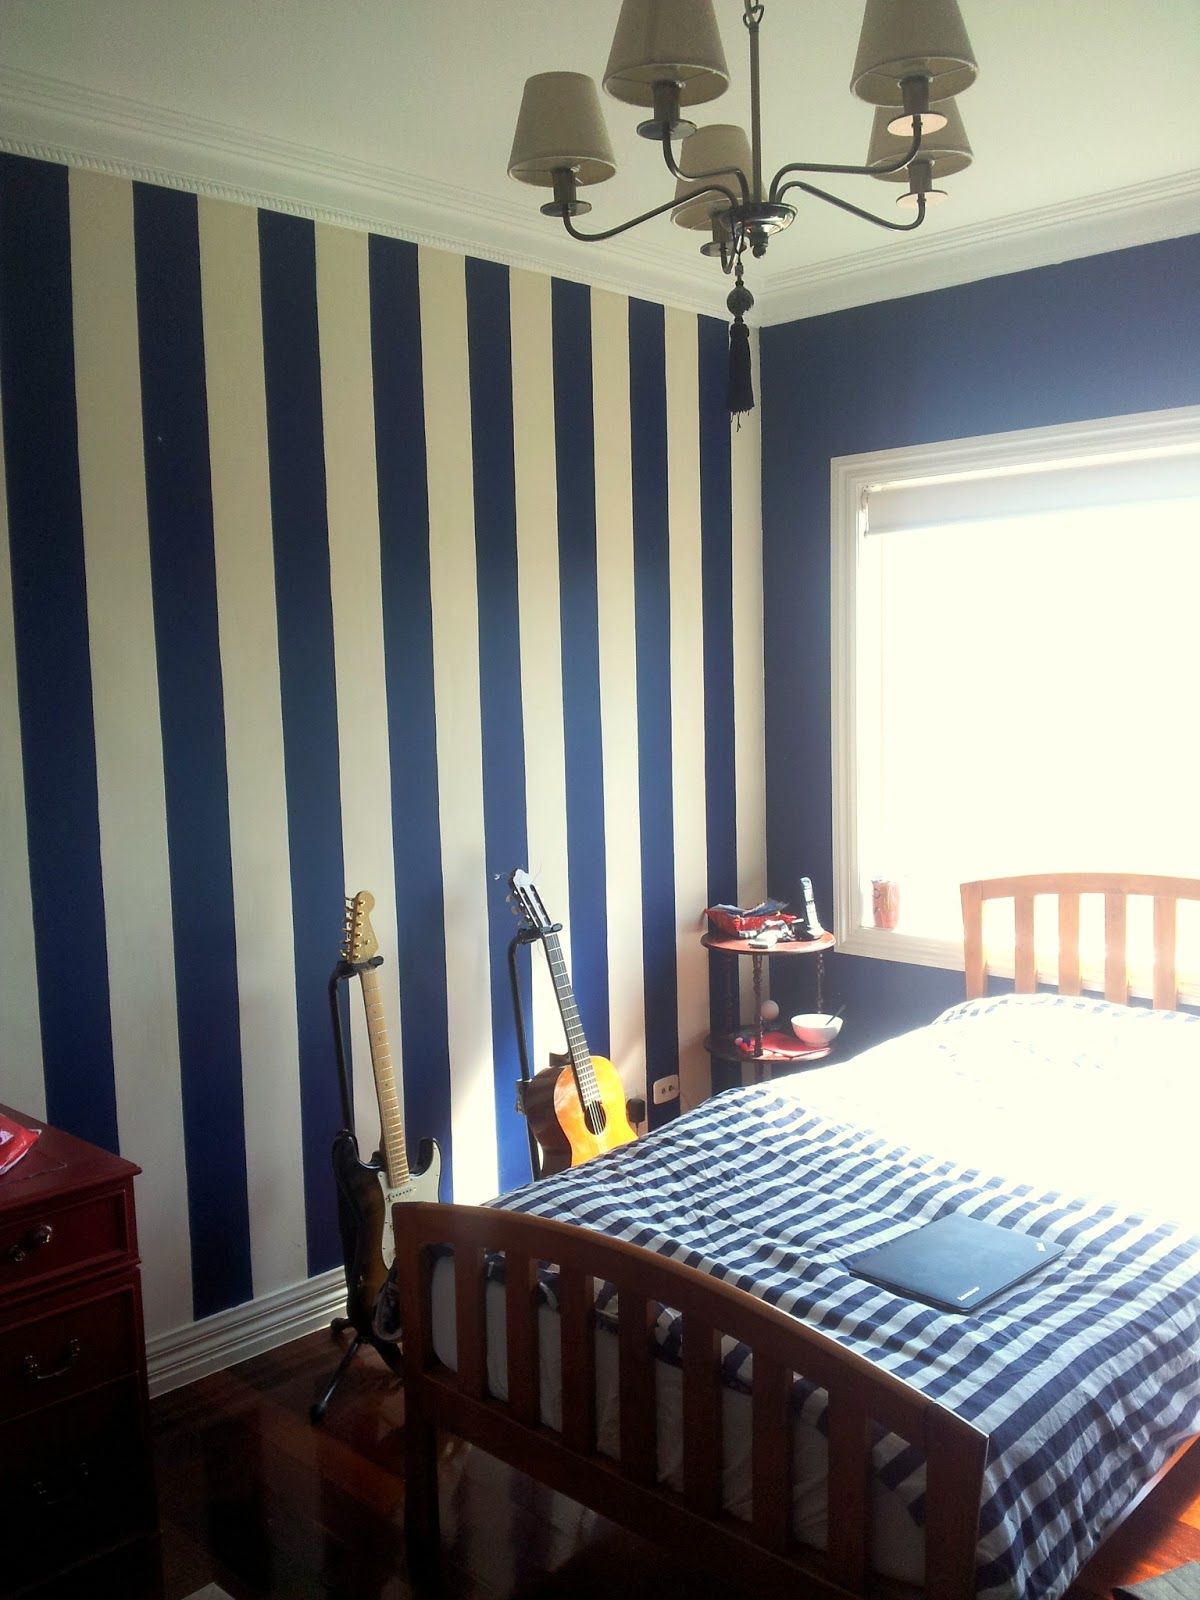 壁の海軍壁紙,ルーム,寝室,家具,ベッド,ベッドシーツ